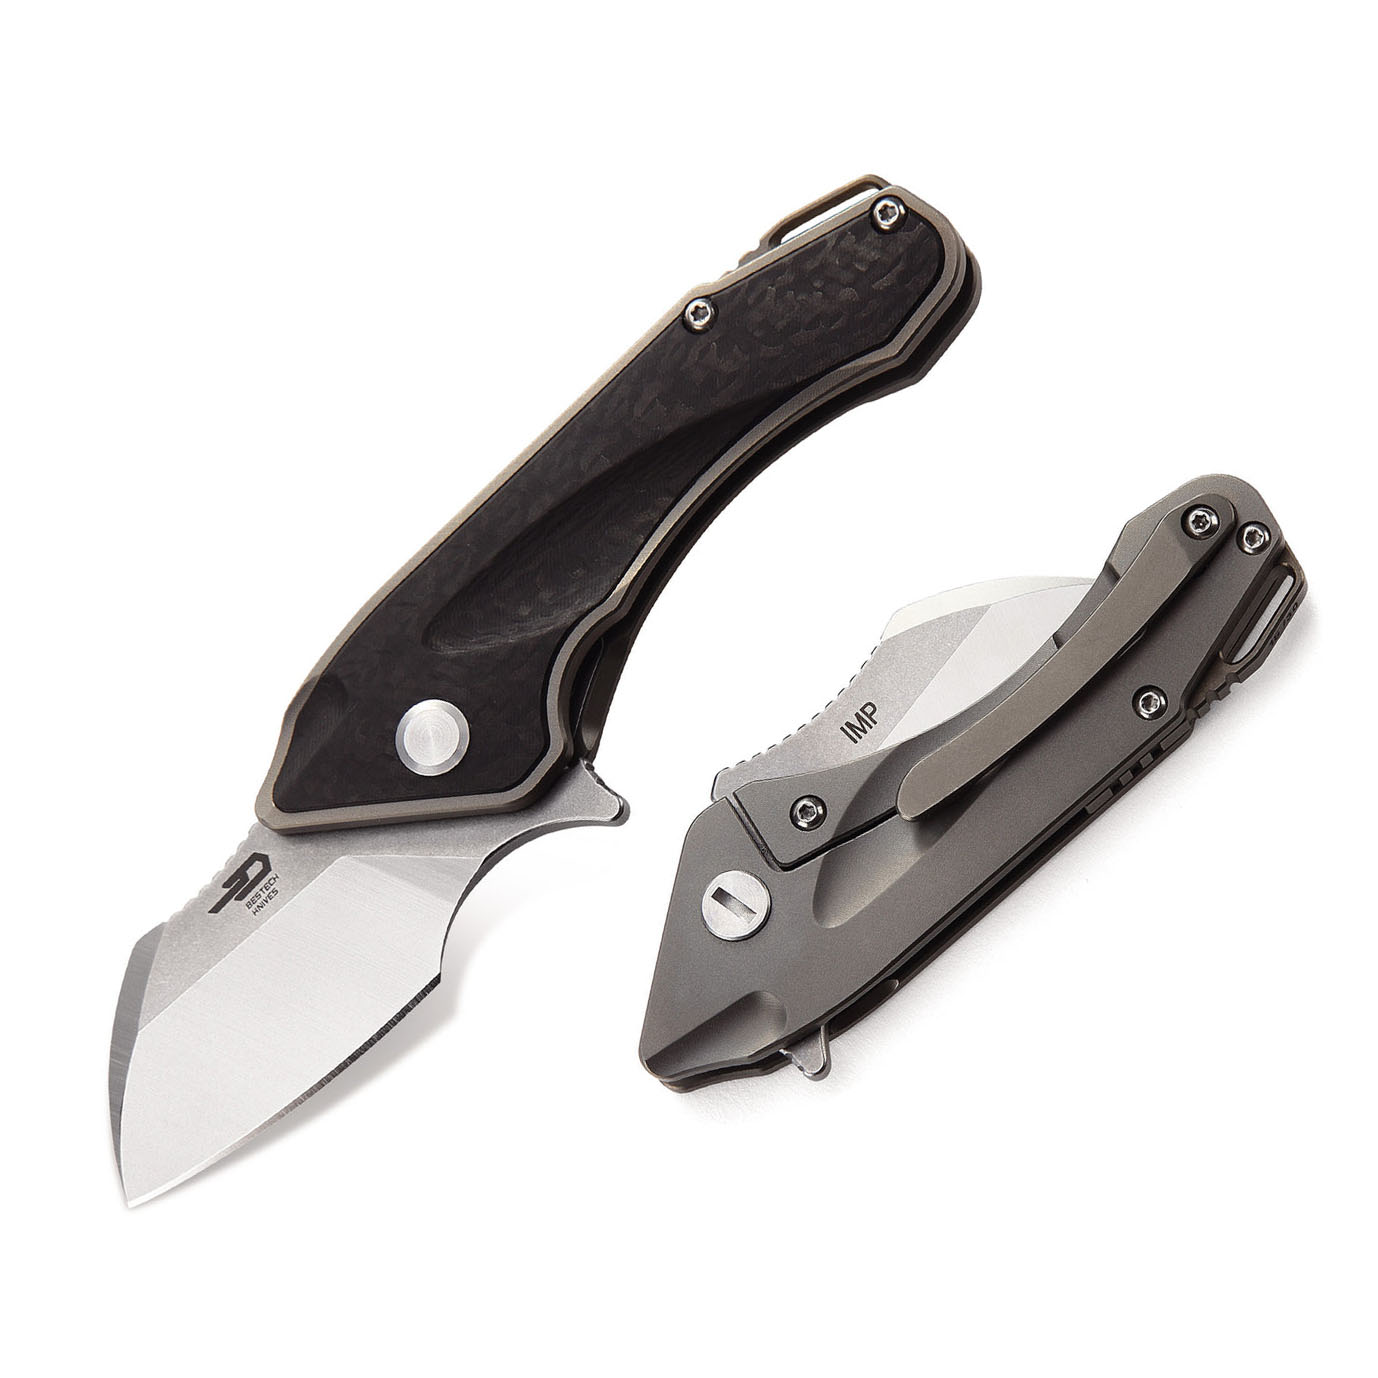 Bestech Knives Imp CPM-S35VN钢 钛合金+碳纤维柄 BT1710A 1180